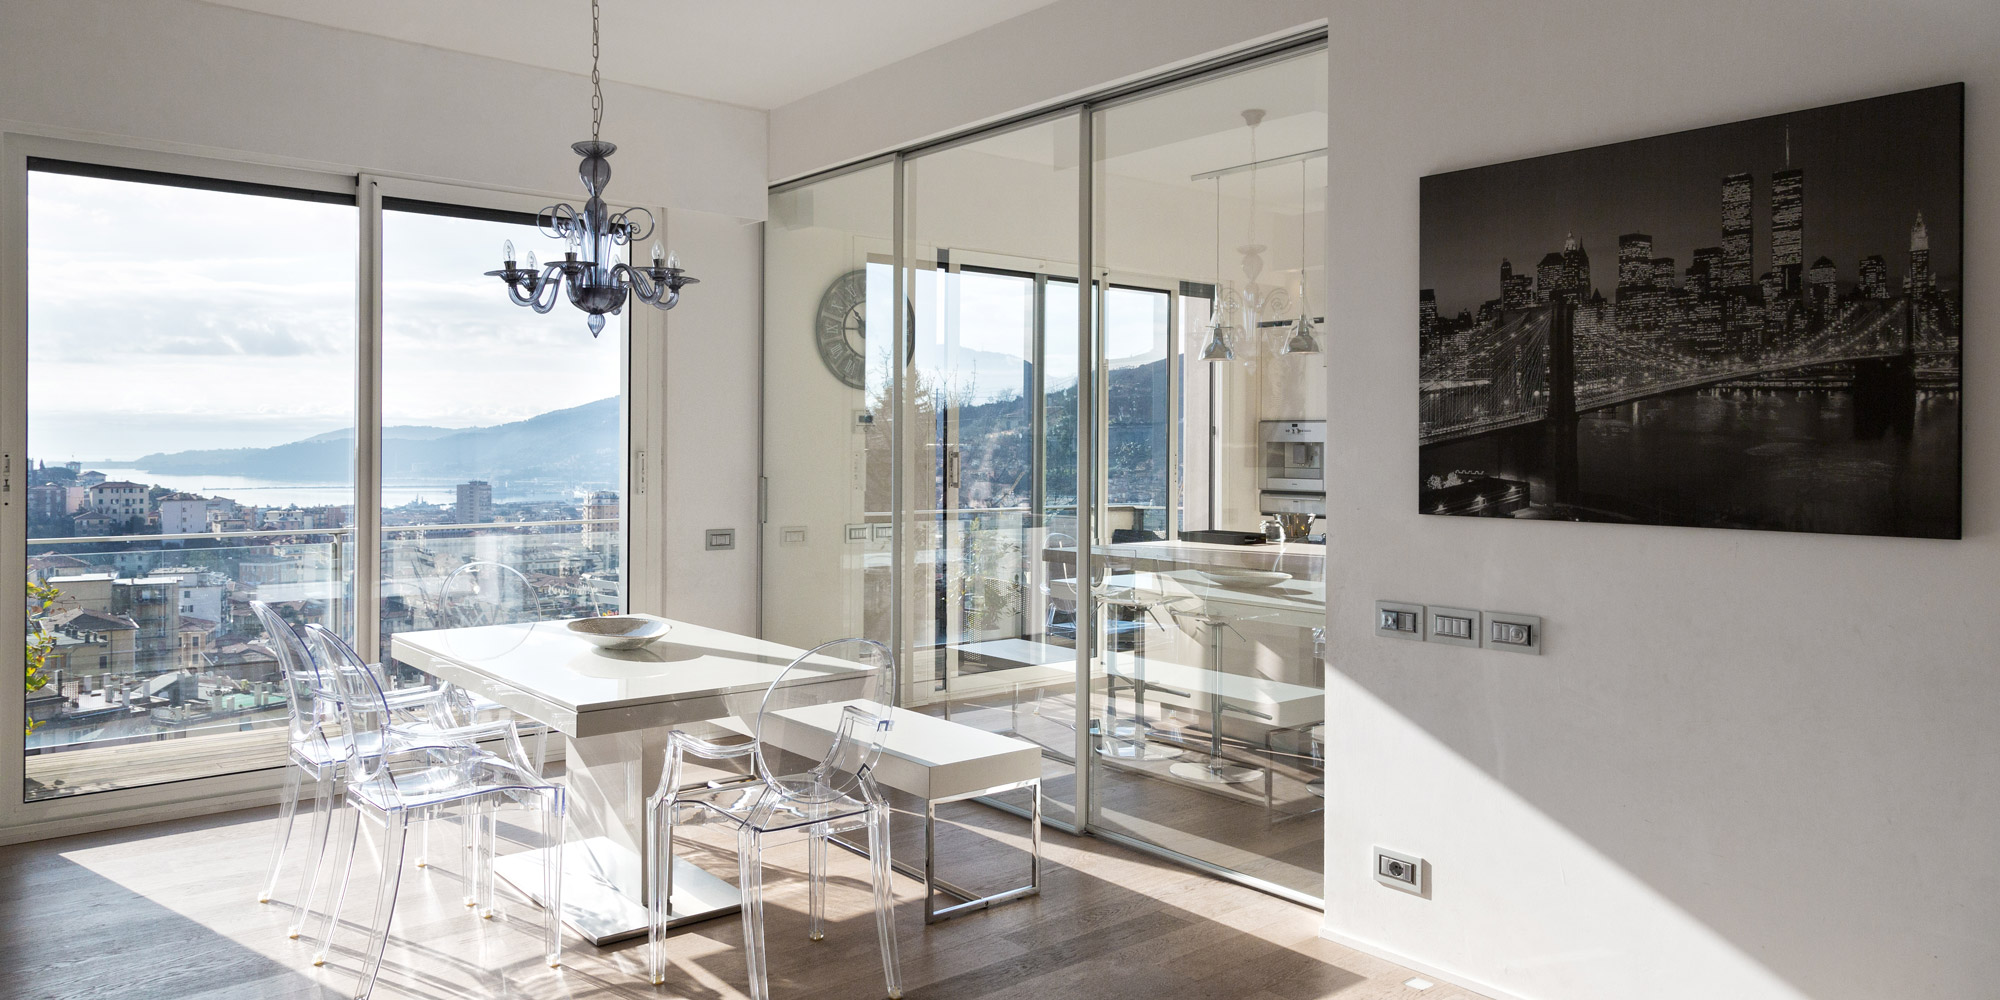 Residenza Privata a La Spezia - Interior Design - Marco Bonfigli Architetto